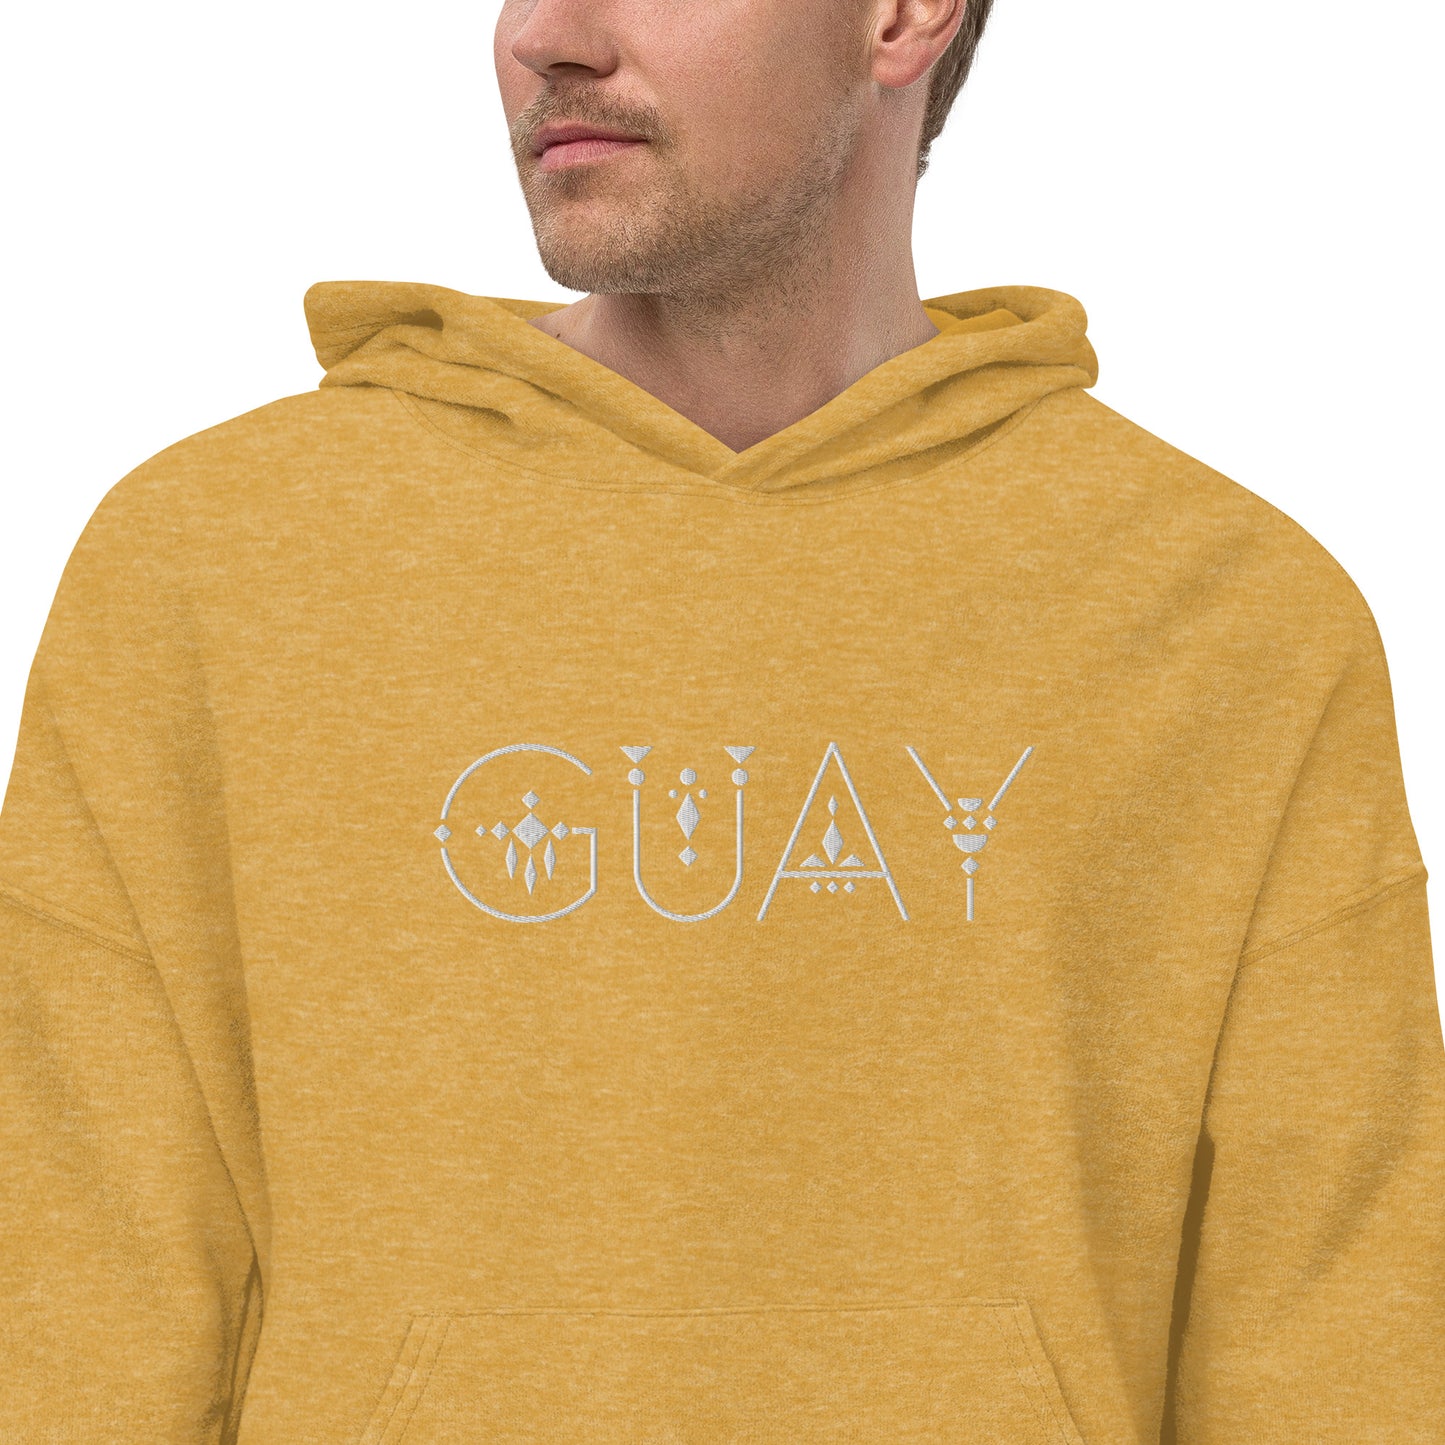 GUAY unisex sueded fleece hoodie